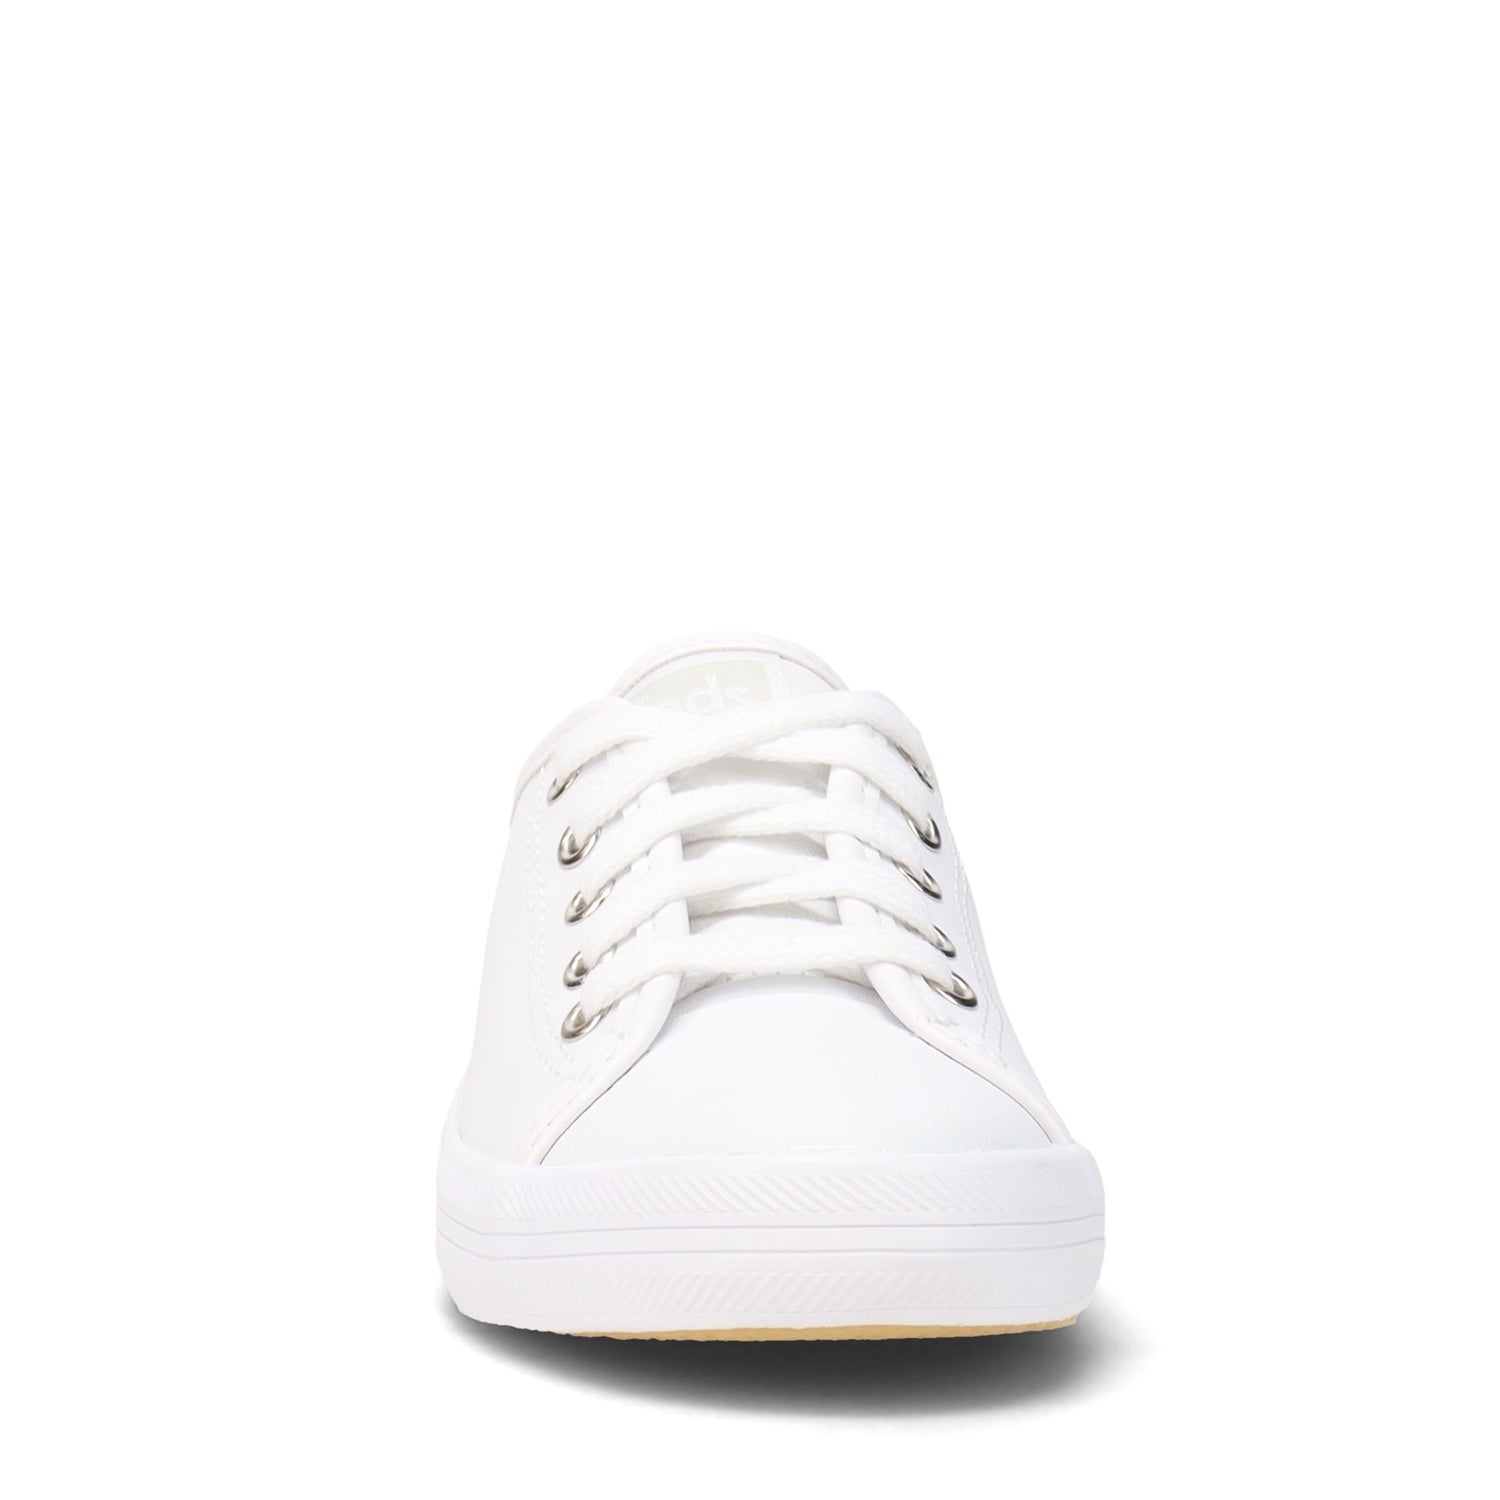 Peltz Shoes  Girl's Keds Kickstart Sneaker - Little Kid & Big Kid WHITE LEATHER KK160537